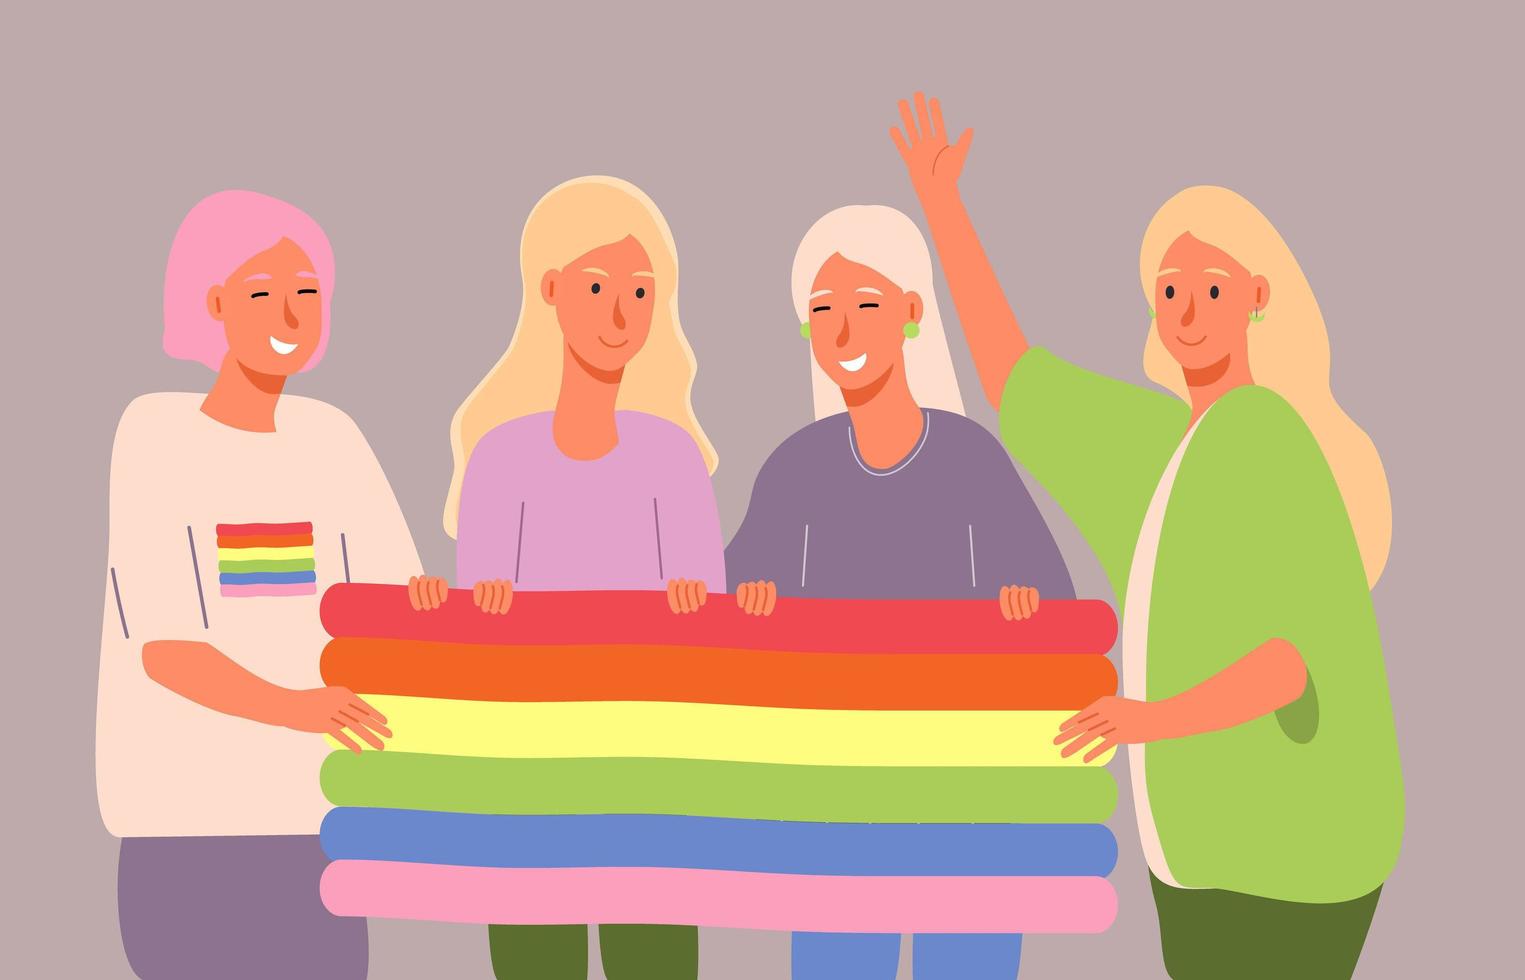 lgbt-geschiedenismaand in oktober, week, dag. lesbiennes, biseksuele meisjes houden regenboogvlag vast en lachen. vector